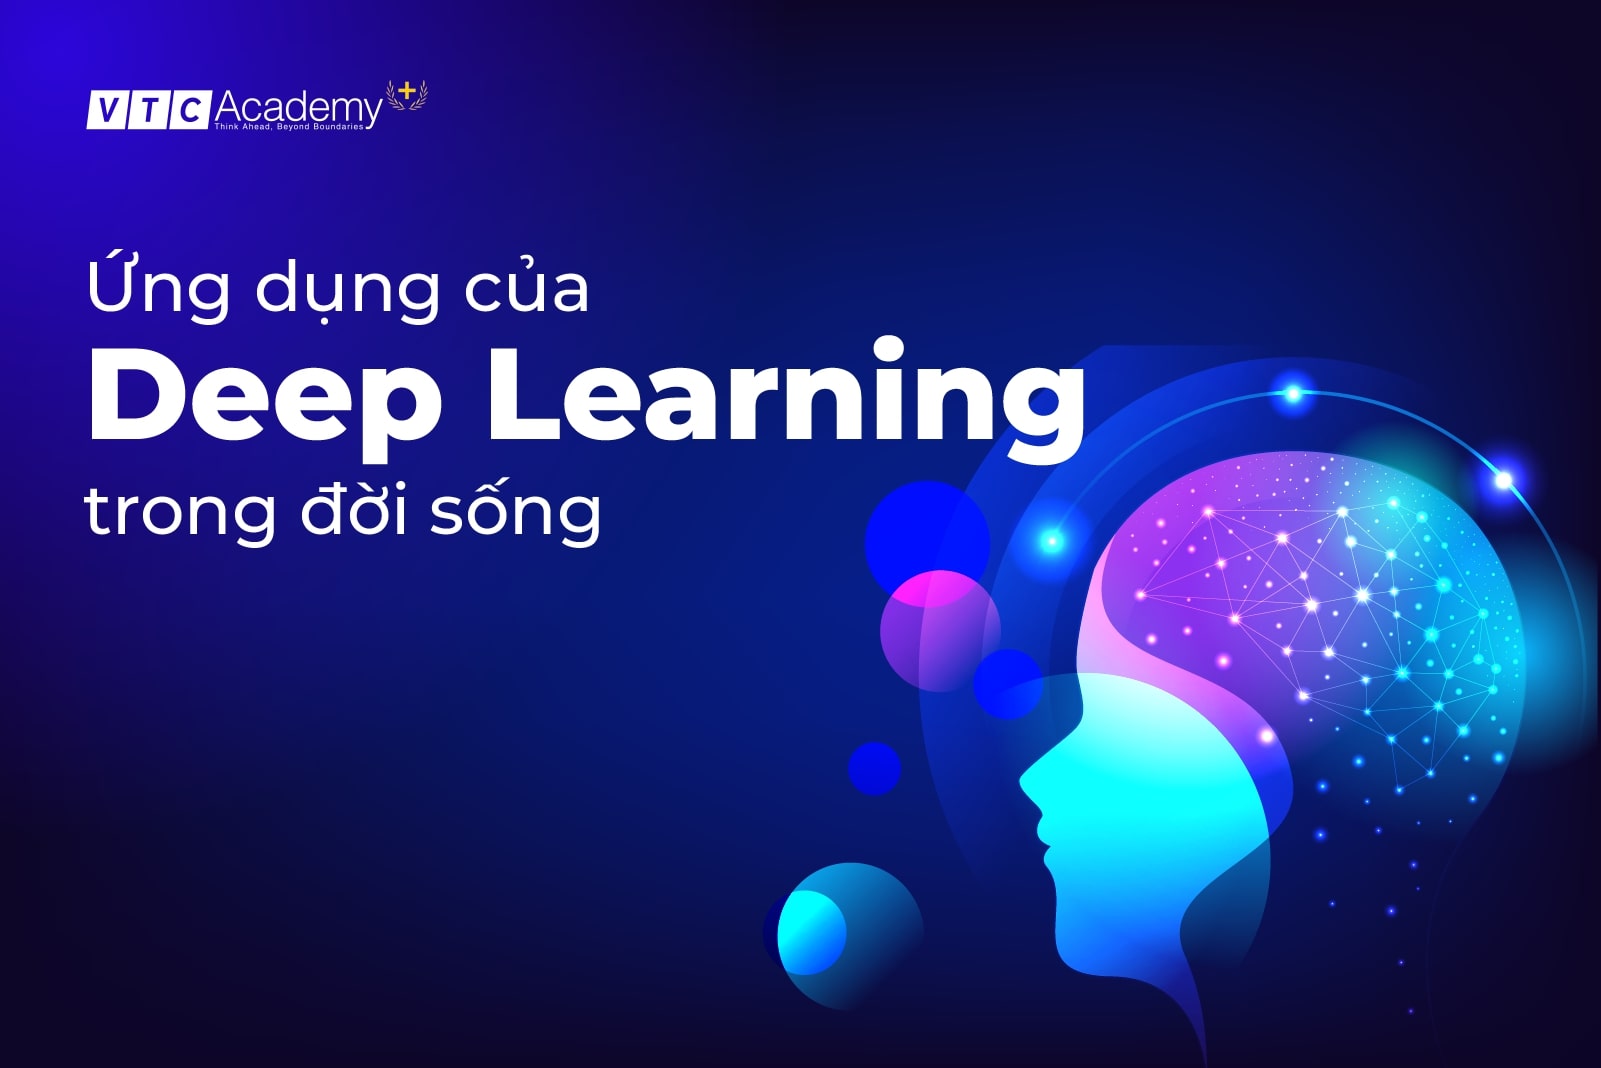 Deep Learning là gì? 6 ứng dụng của Deep Learning vào đời sống